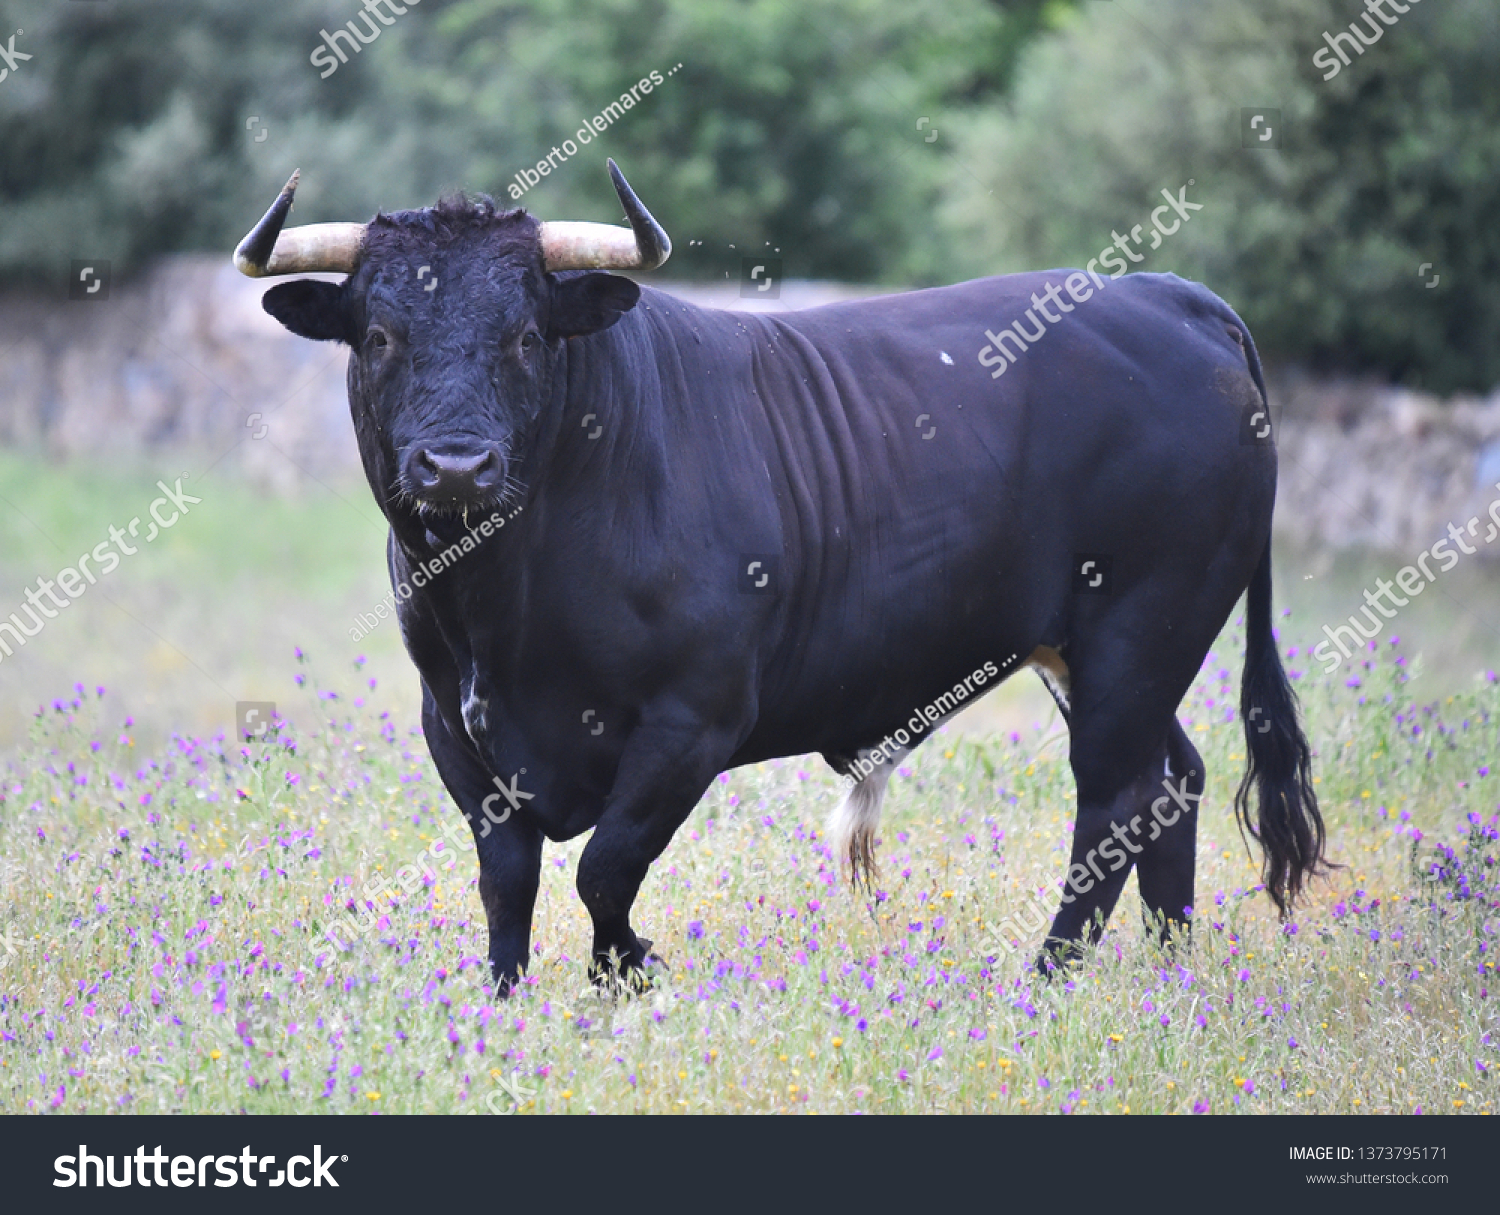 Bull in spain in the green field #1373795171